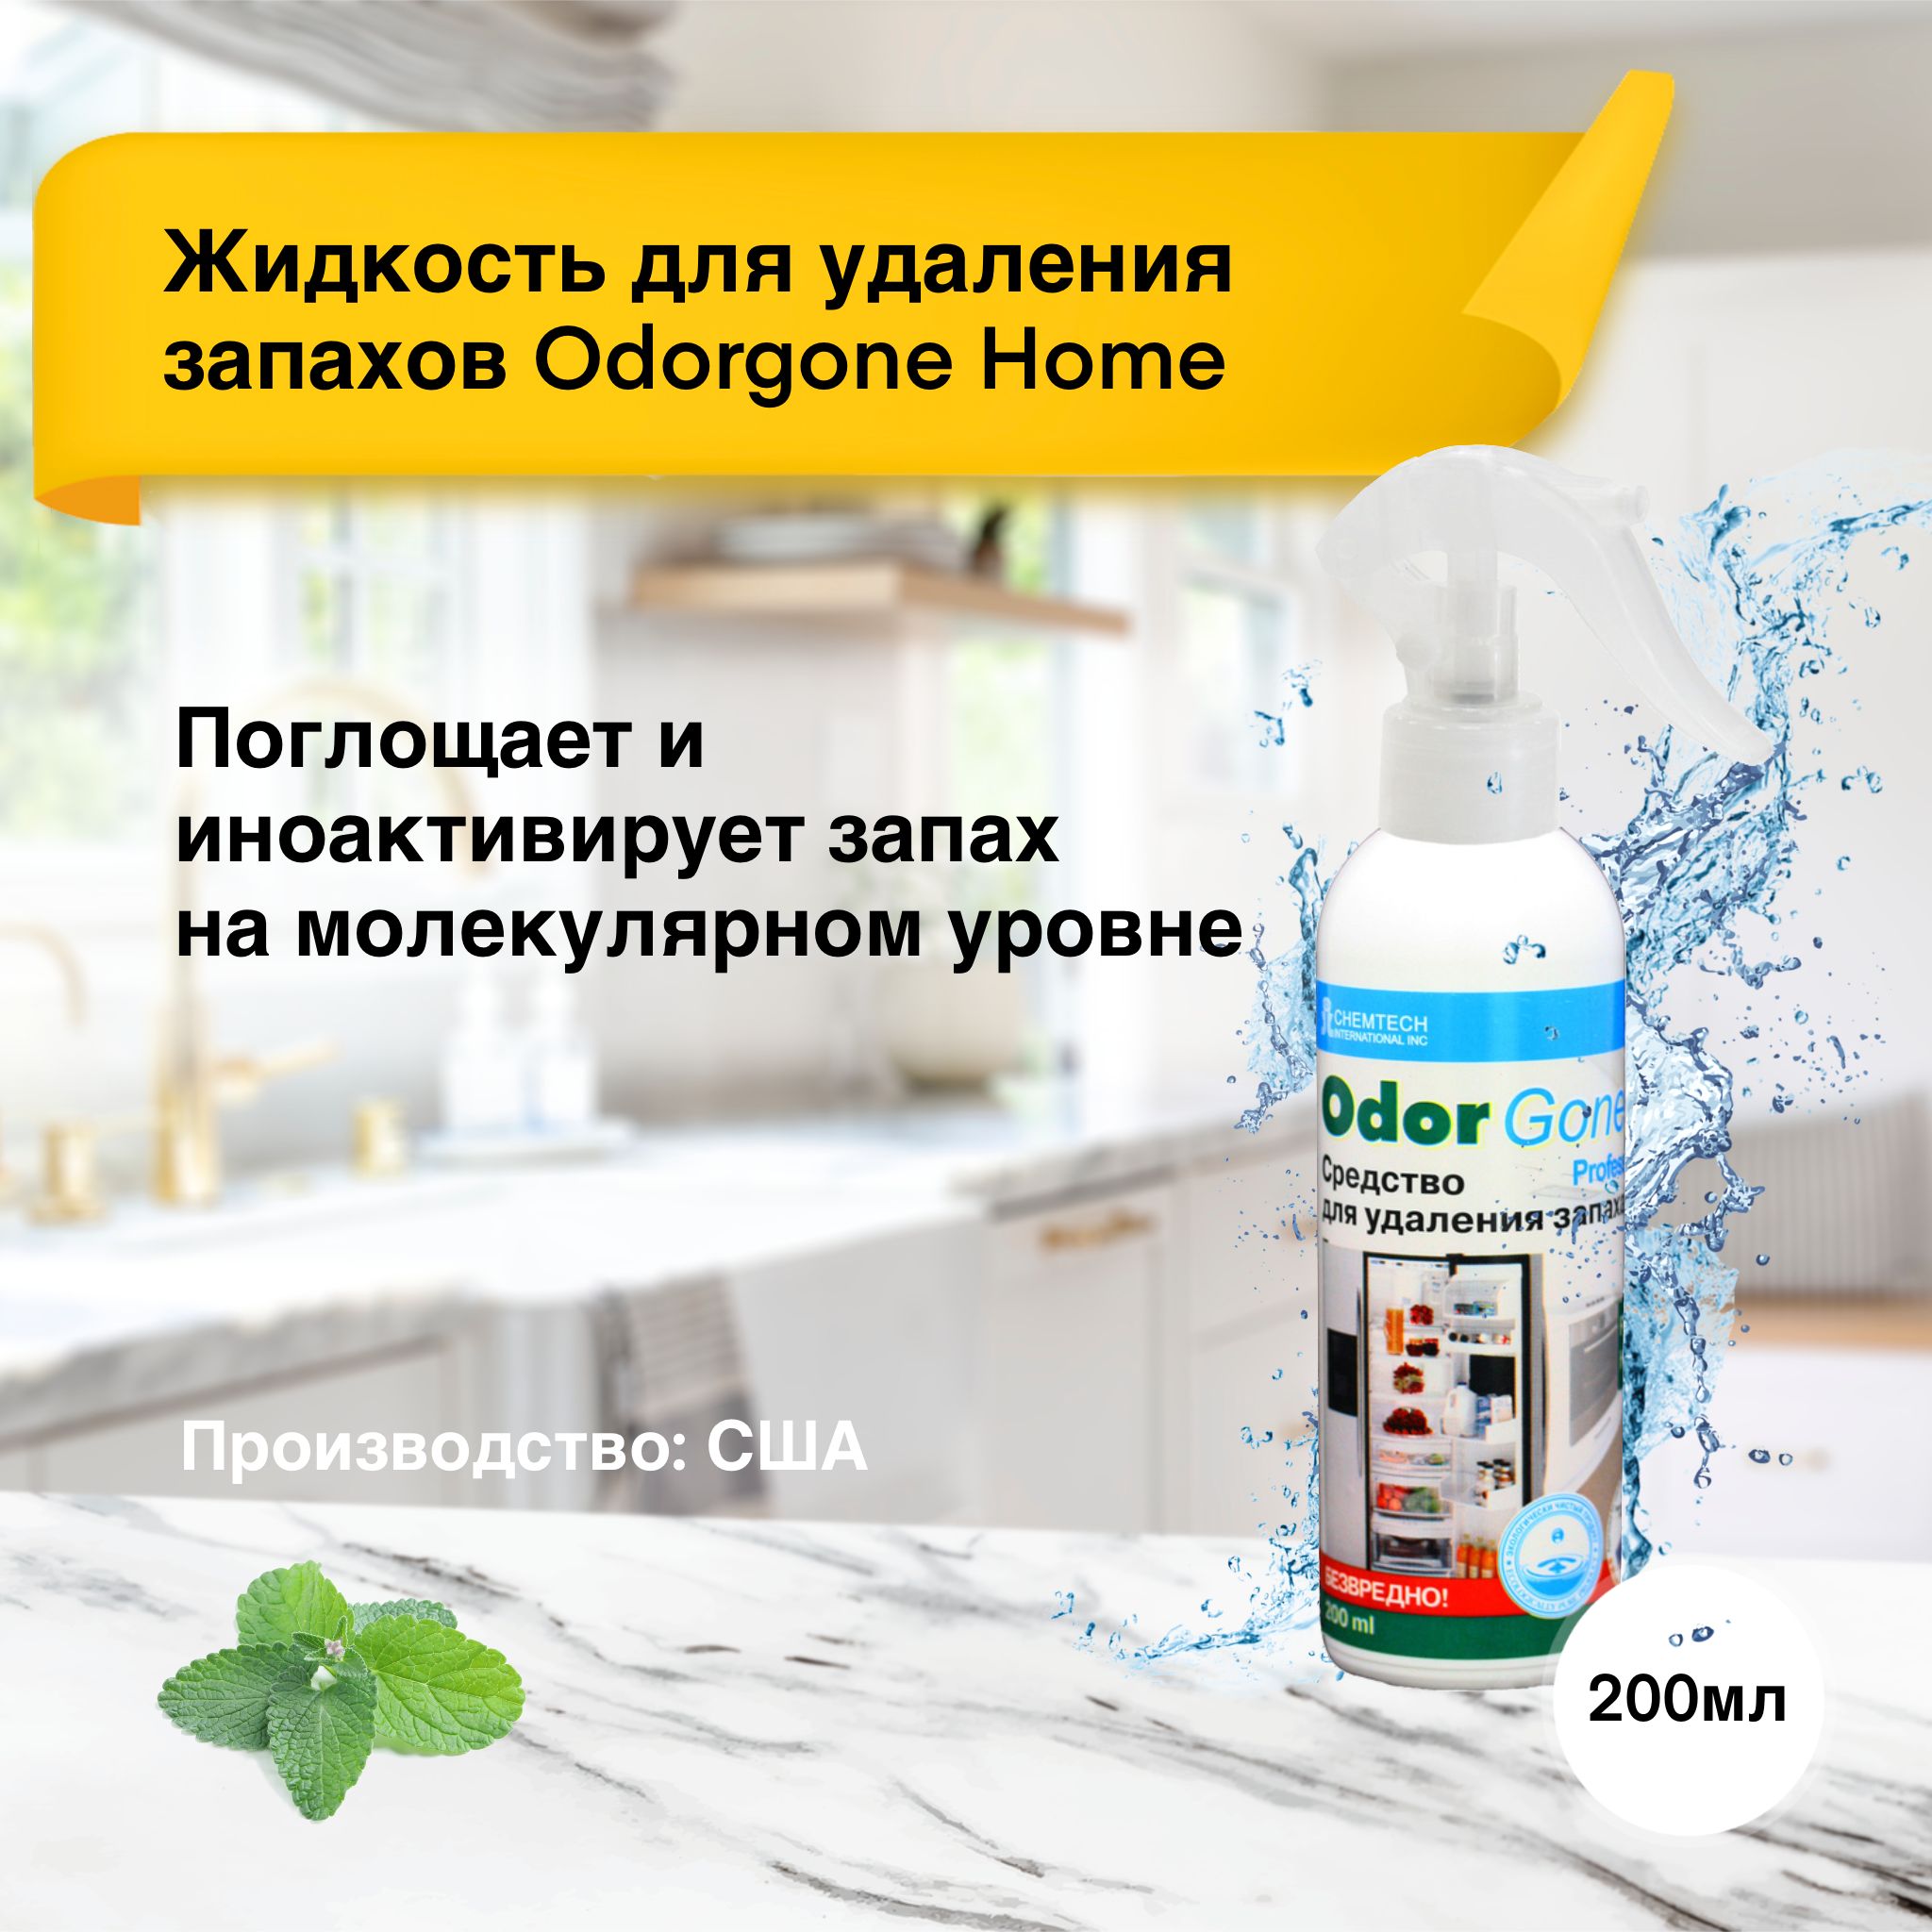 OdorGone - защита от любого неприятного запаха